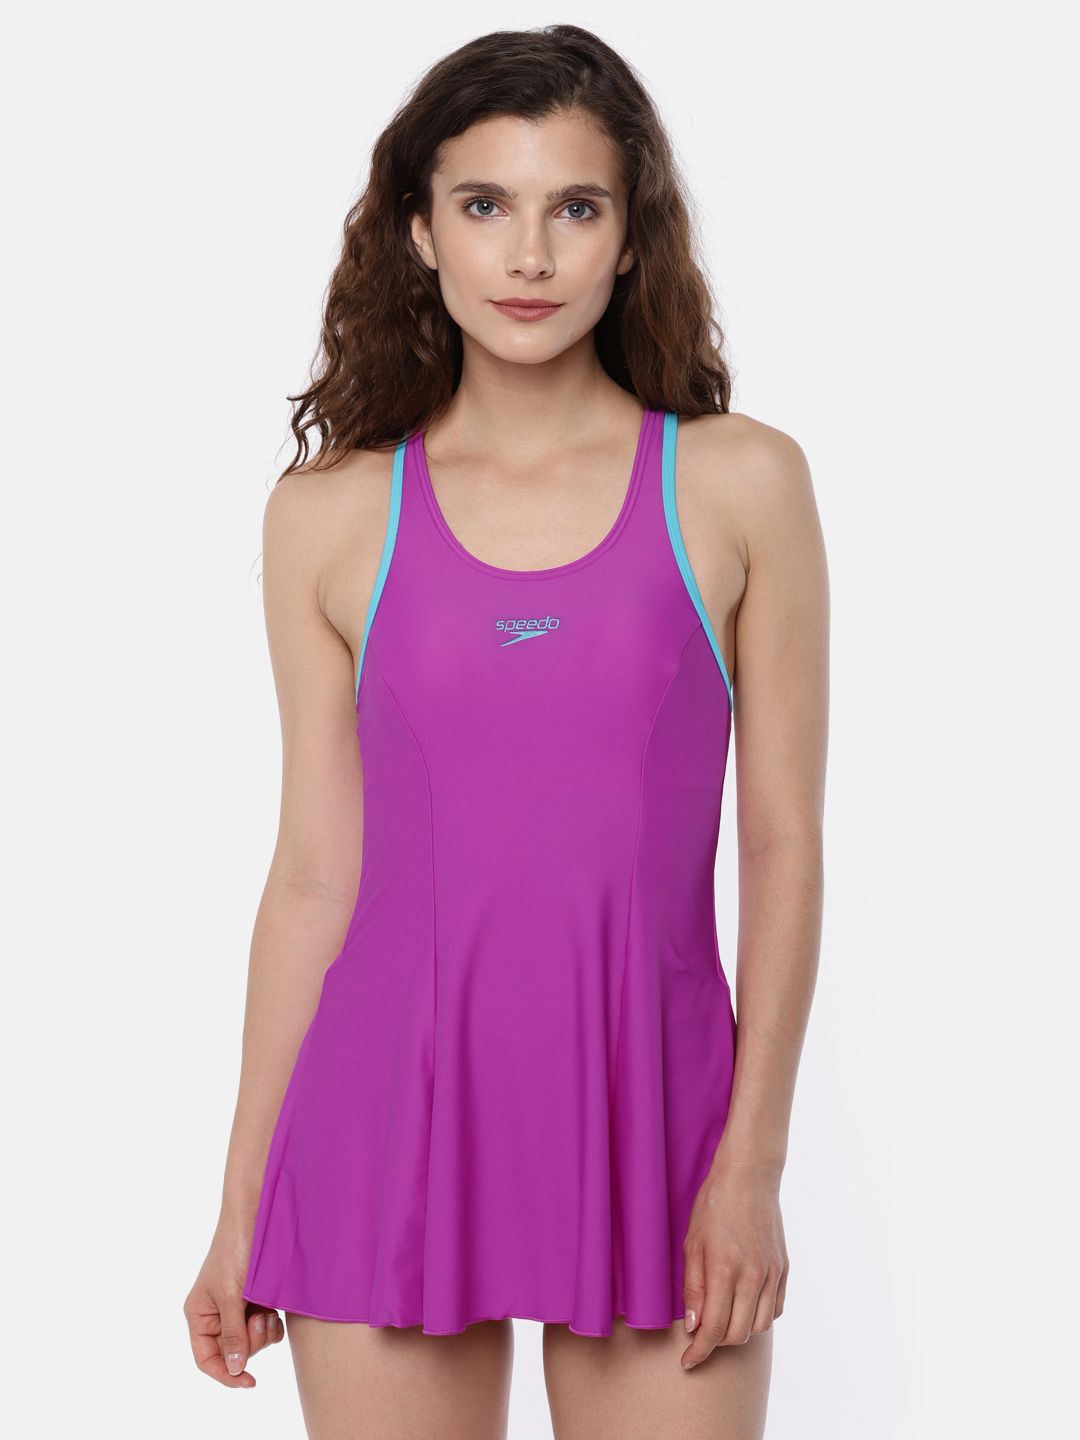 Speedo Purple Swimwear 8028788592 Price in India